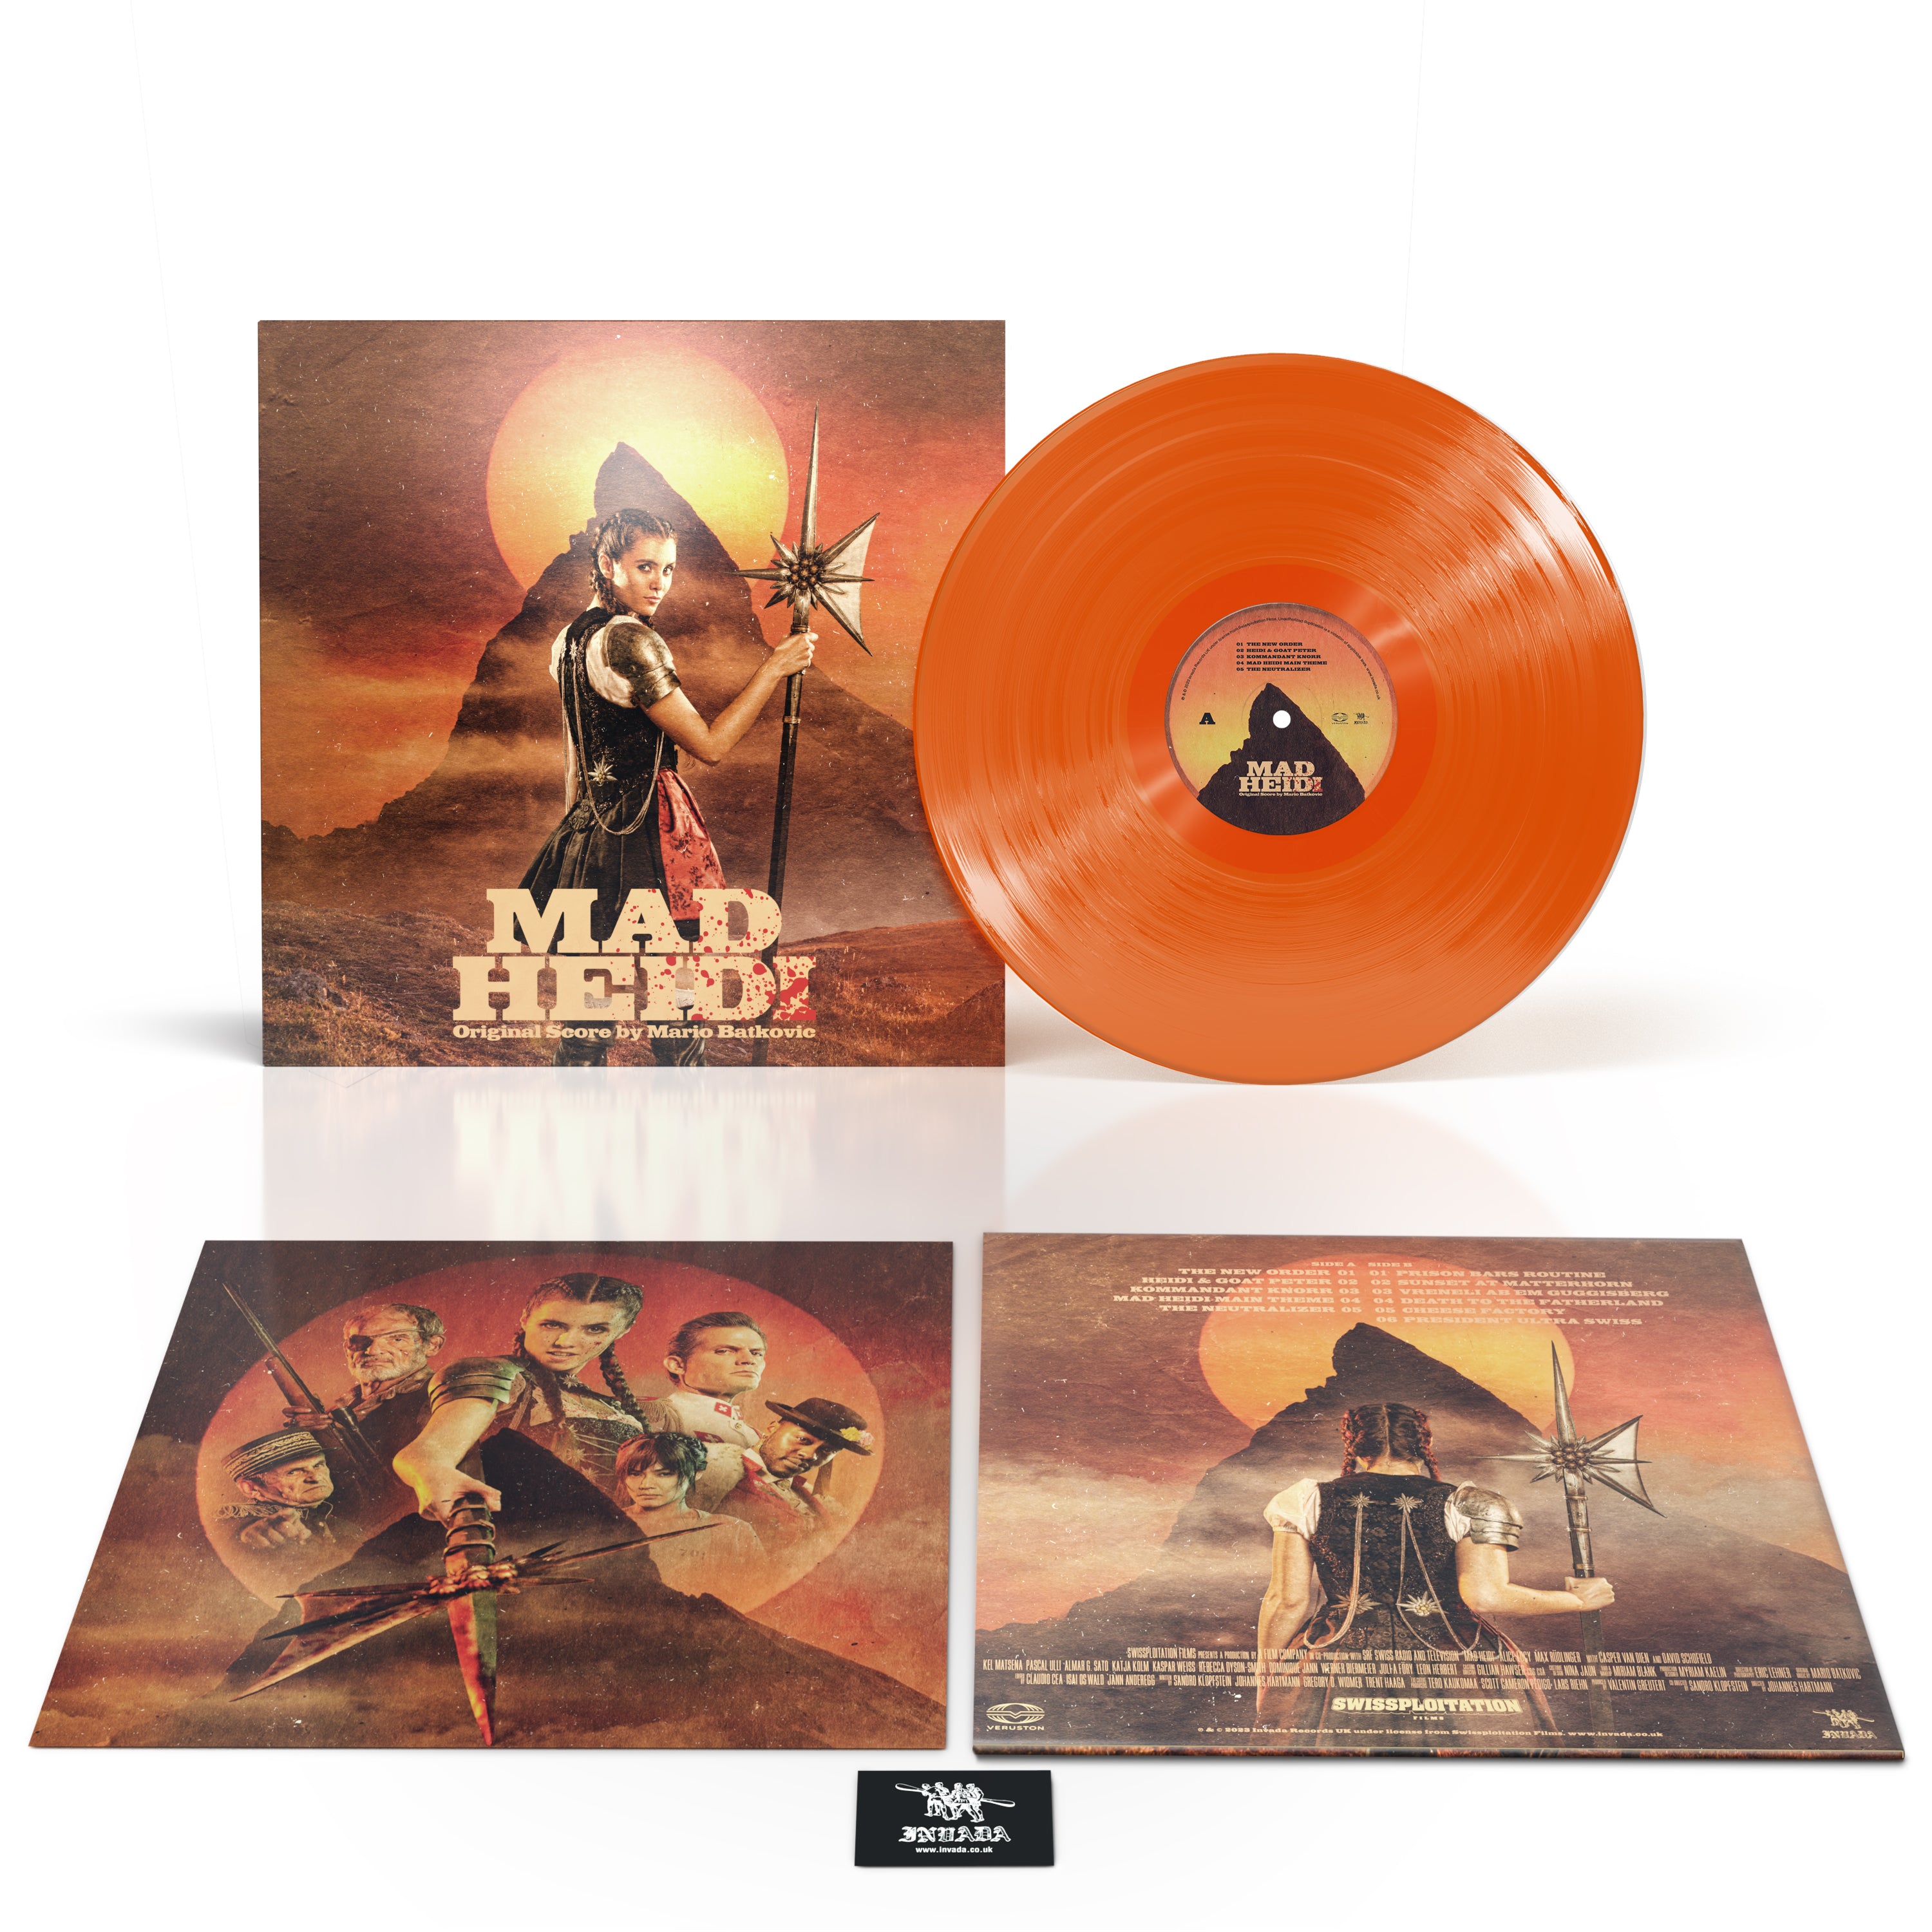 Mad Heidi (Original Score): Limited Orange Vinyl LP